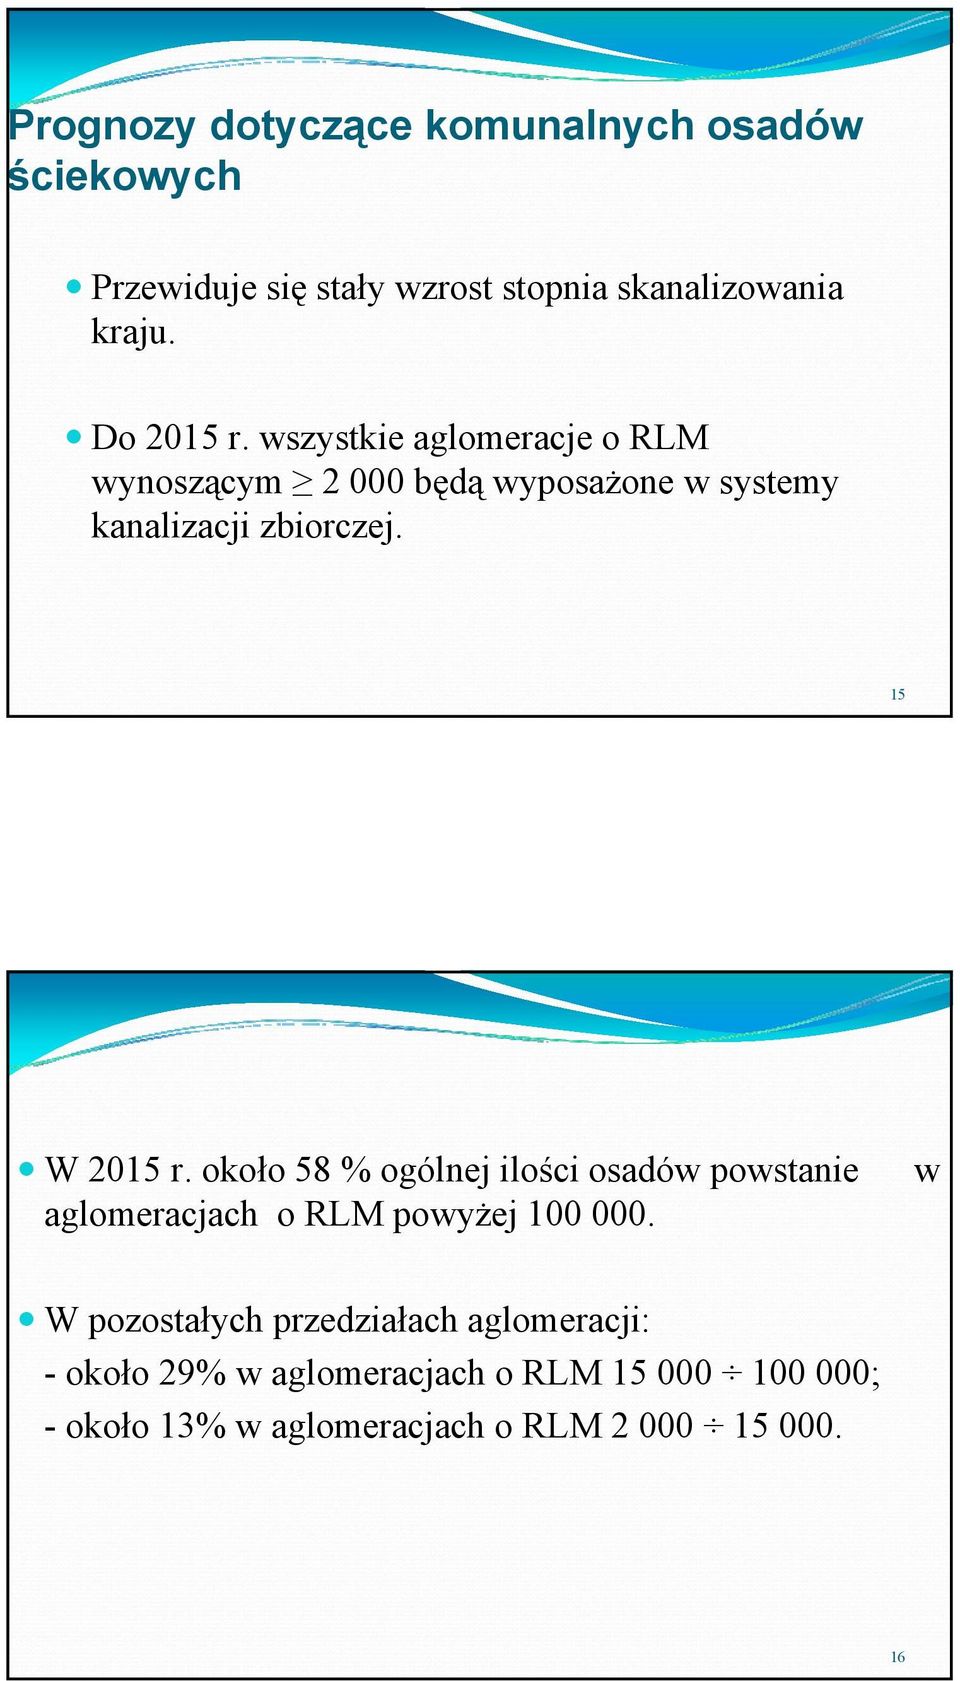 15 W 2015 r. około 58 % ogólnej ilości osadów powstanie aglomeracjach o RLM powyżej 100 000.